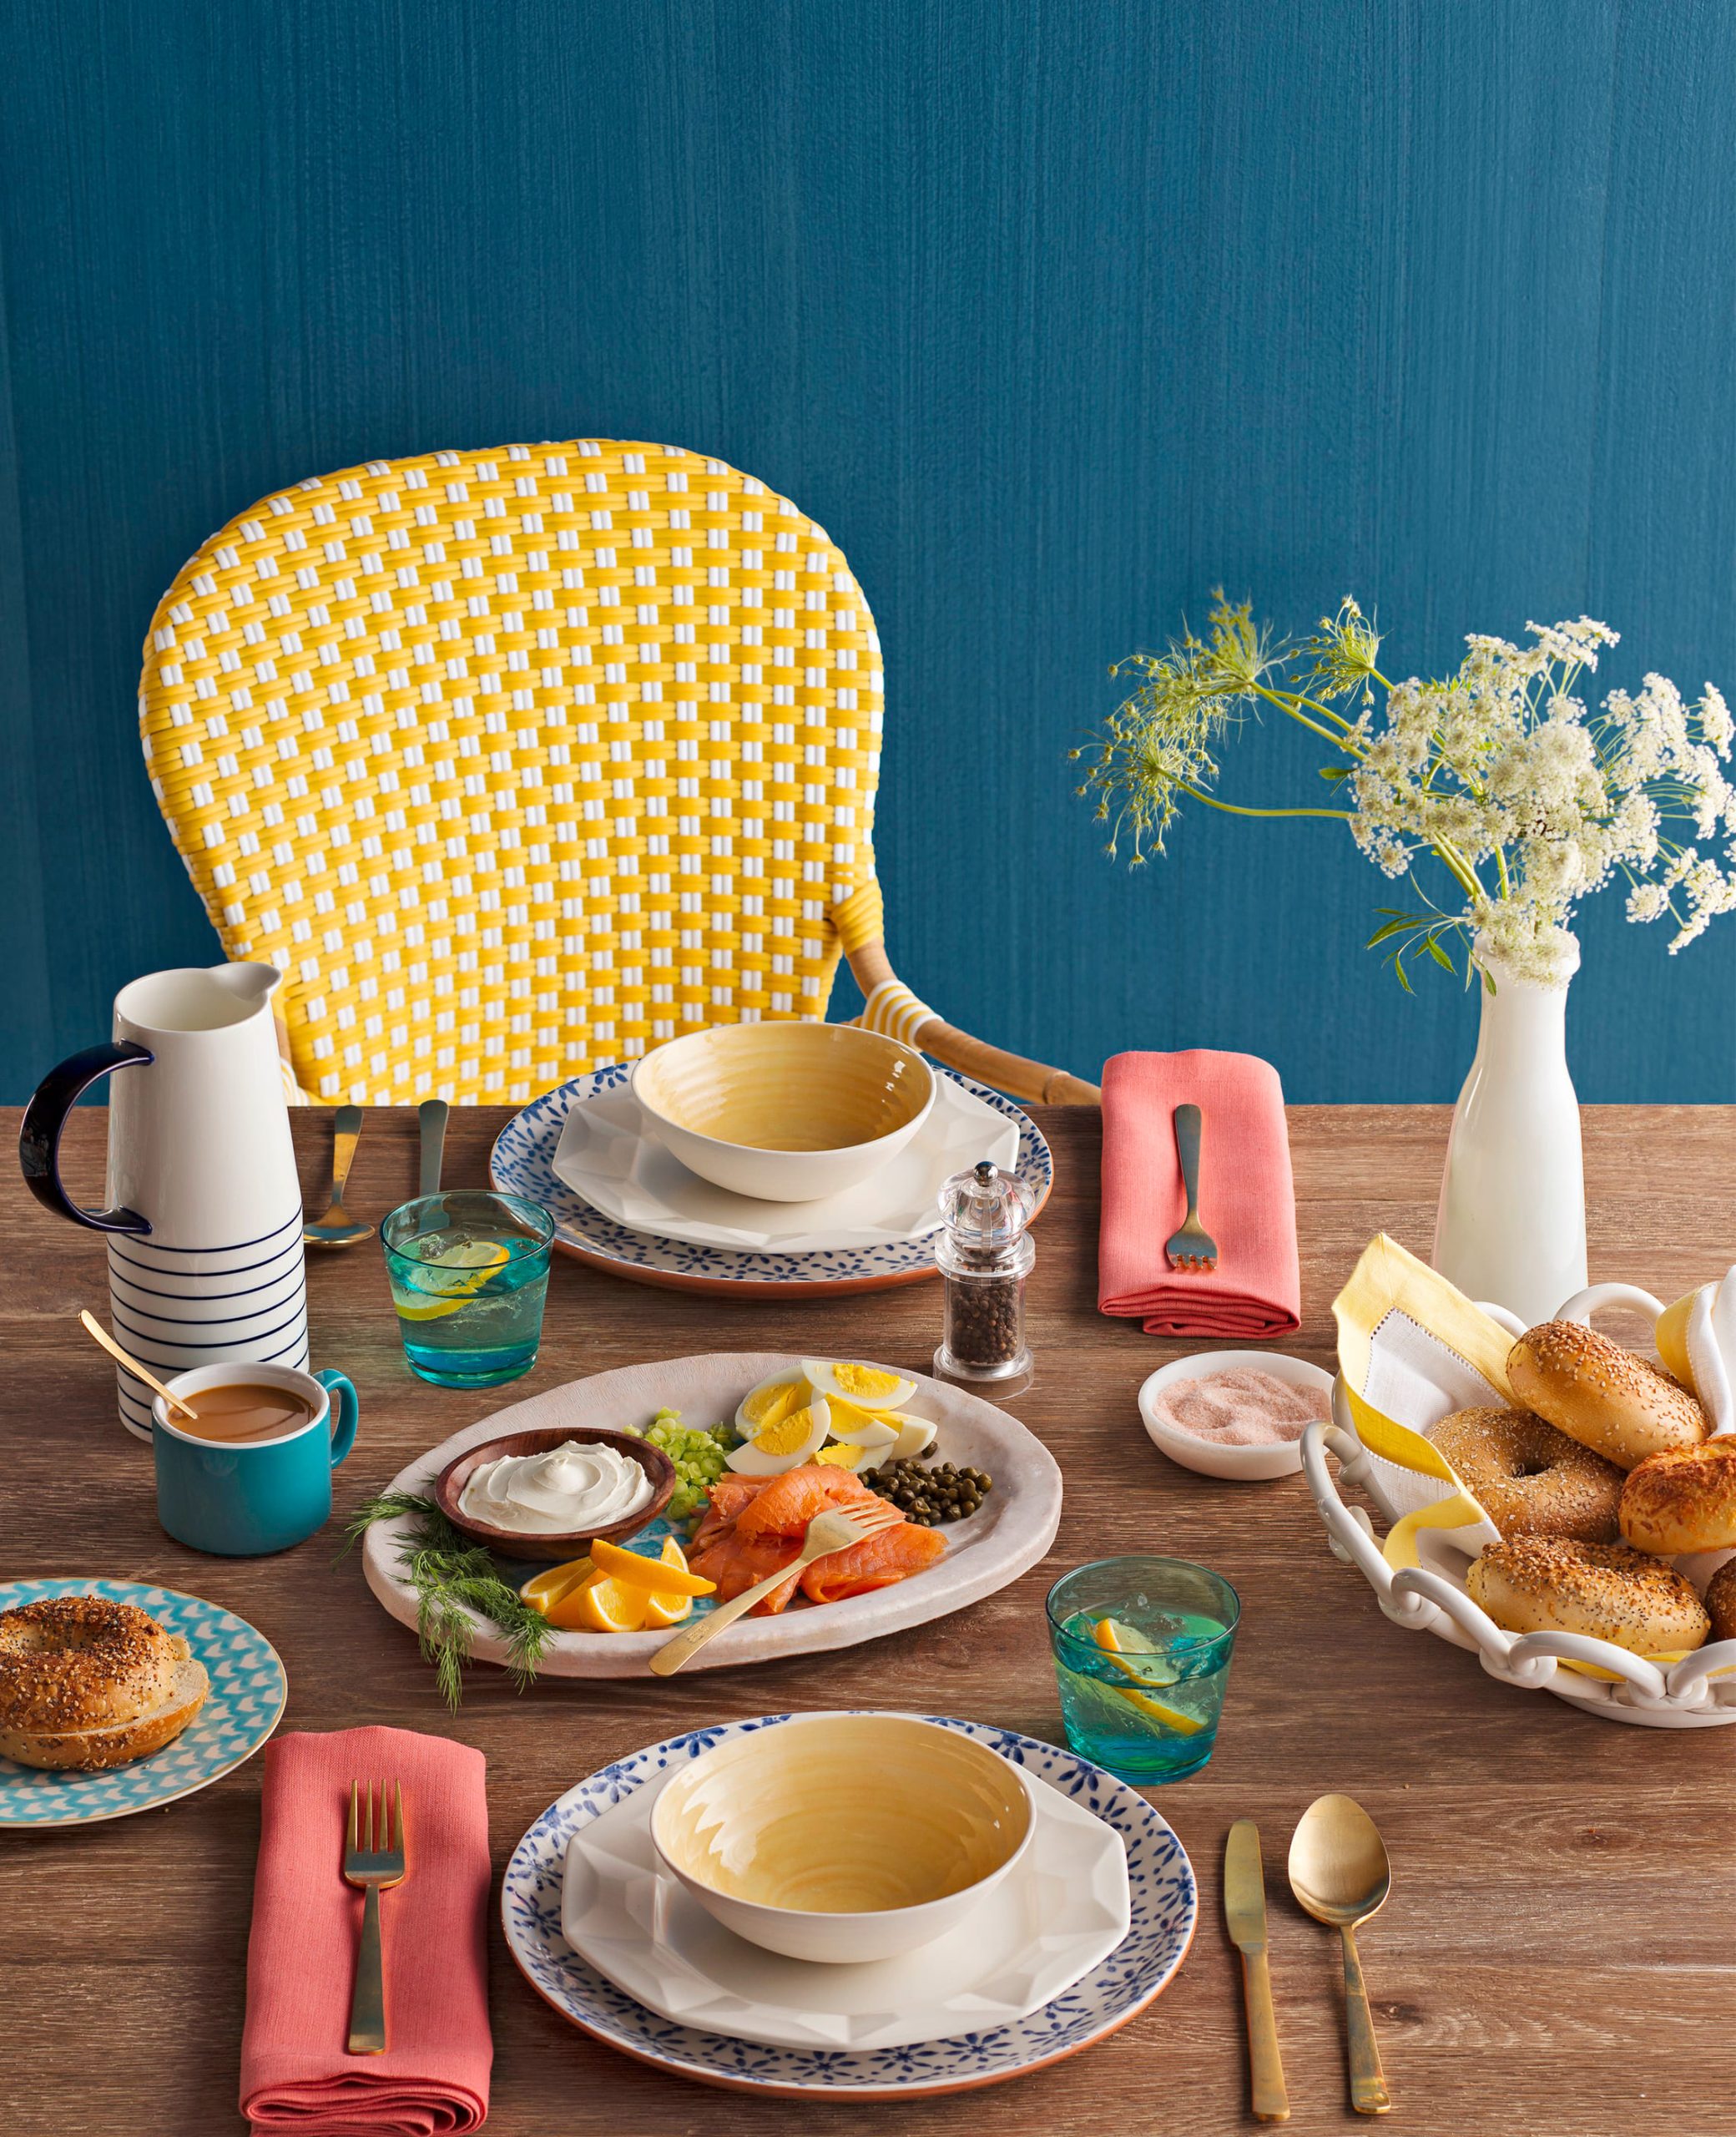 Modern, colorful dining room vignette set up for breakfast